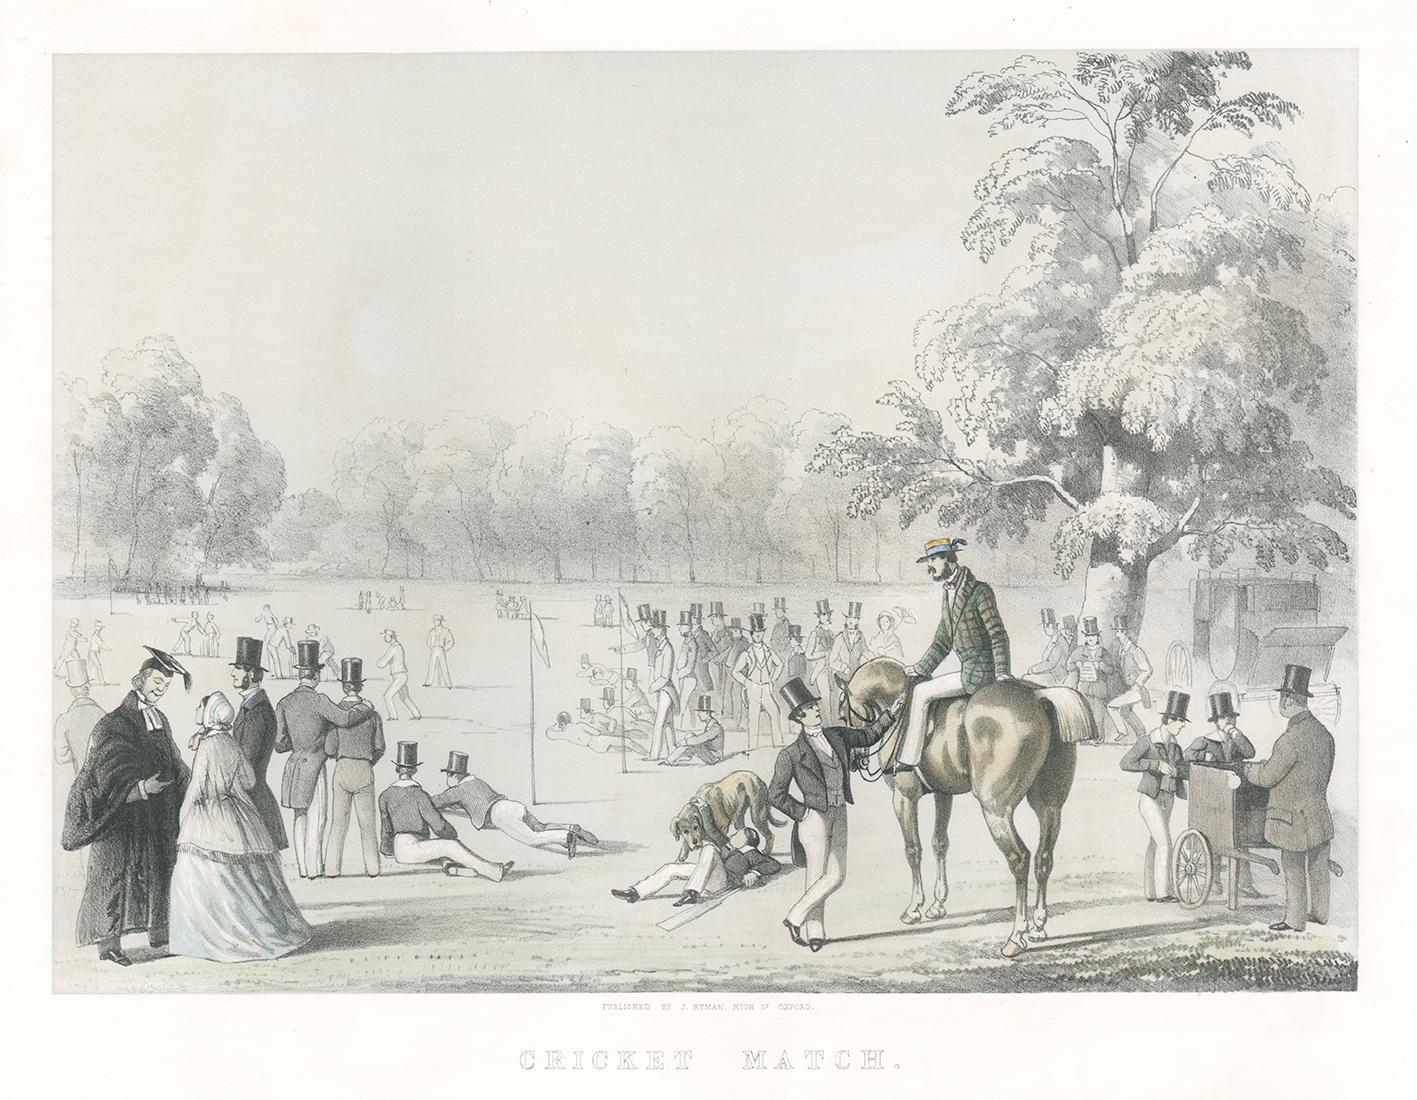 Match de cricket, lithographie de sport victorienne anglaise, vers 1850